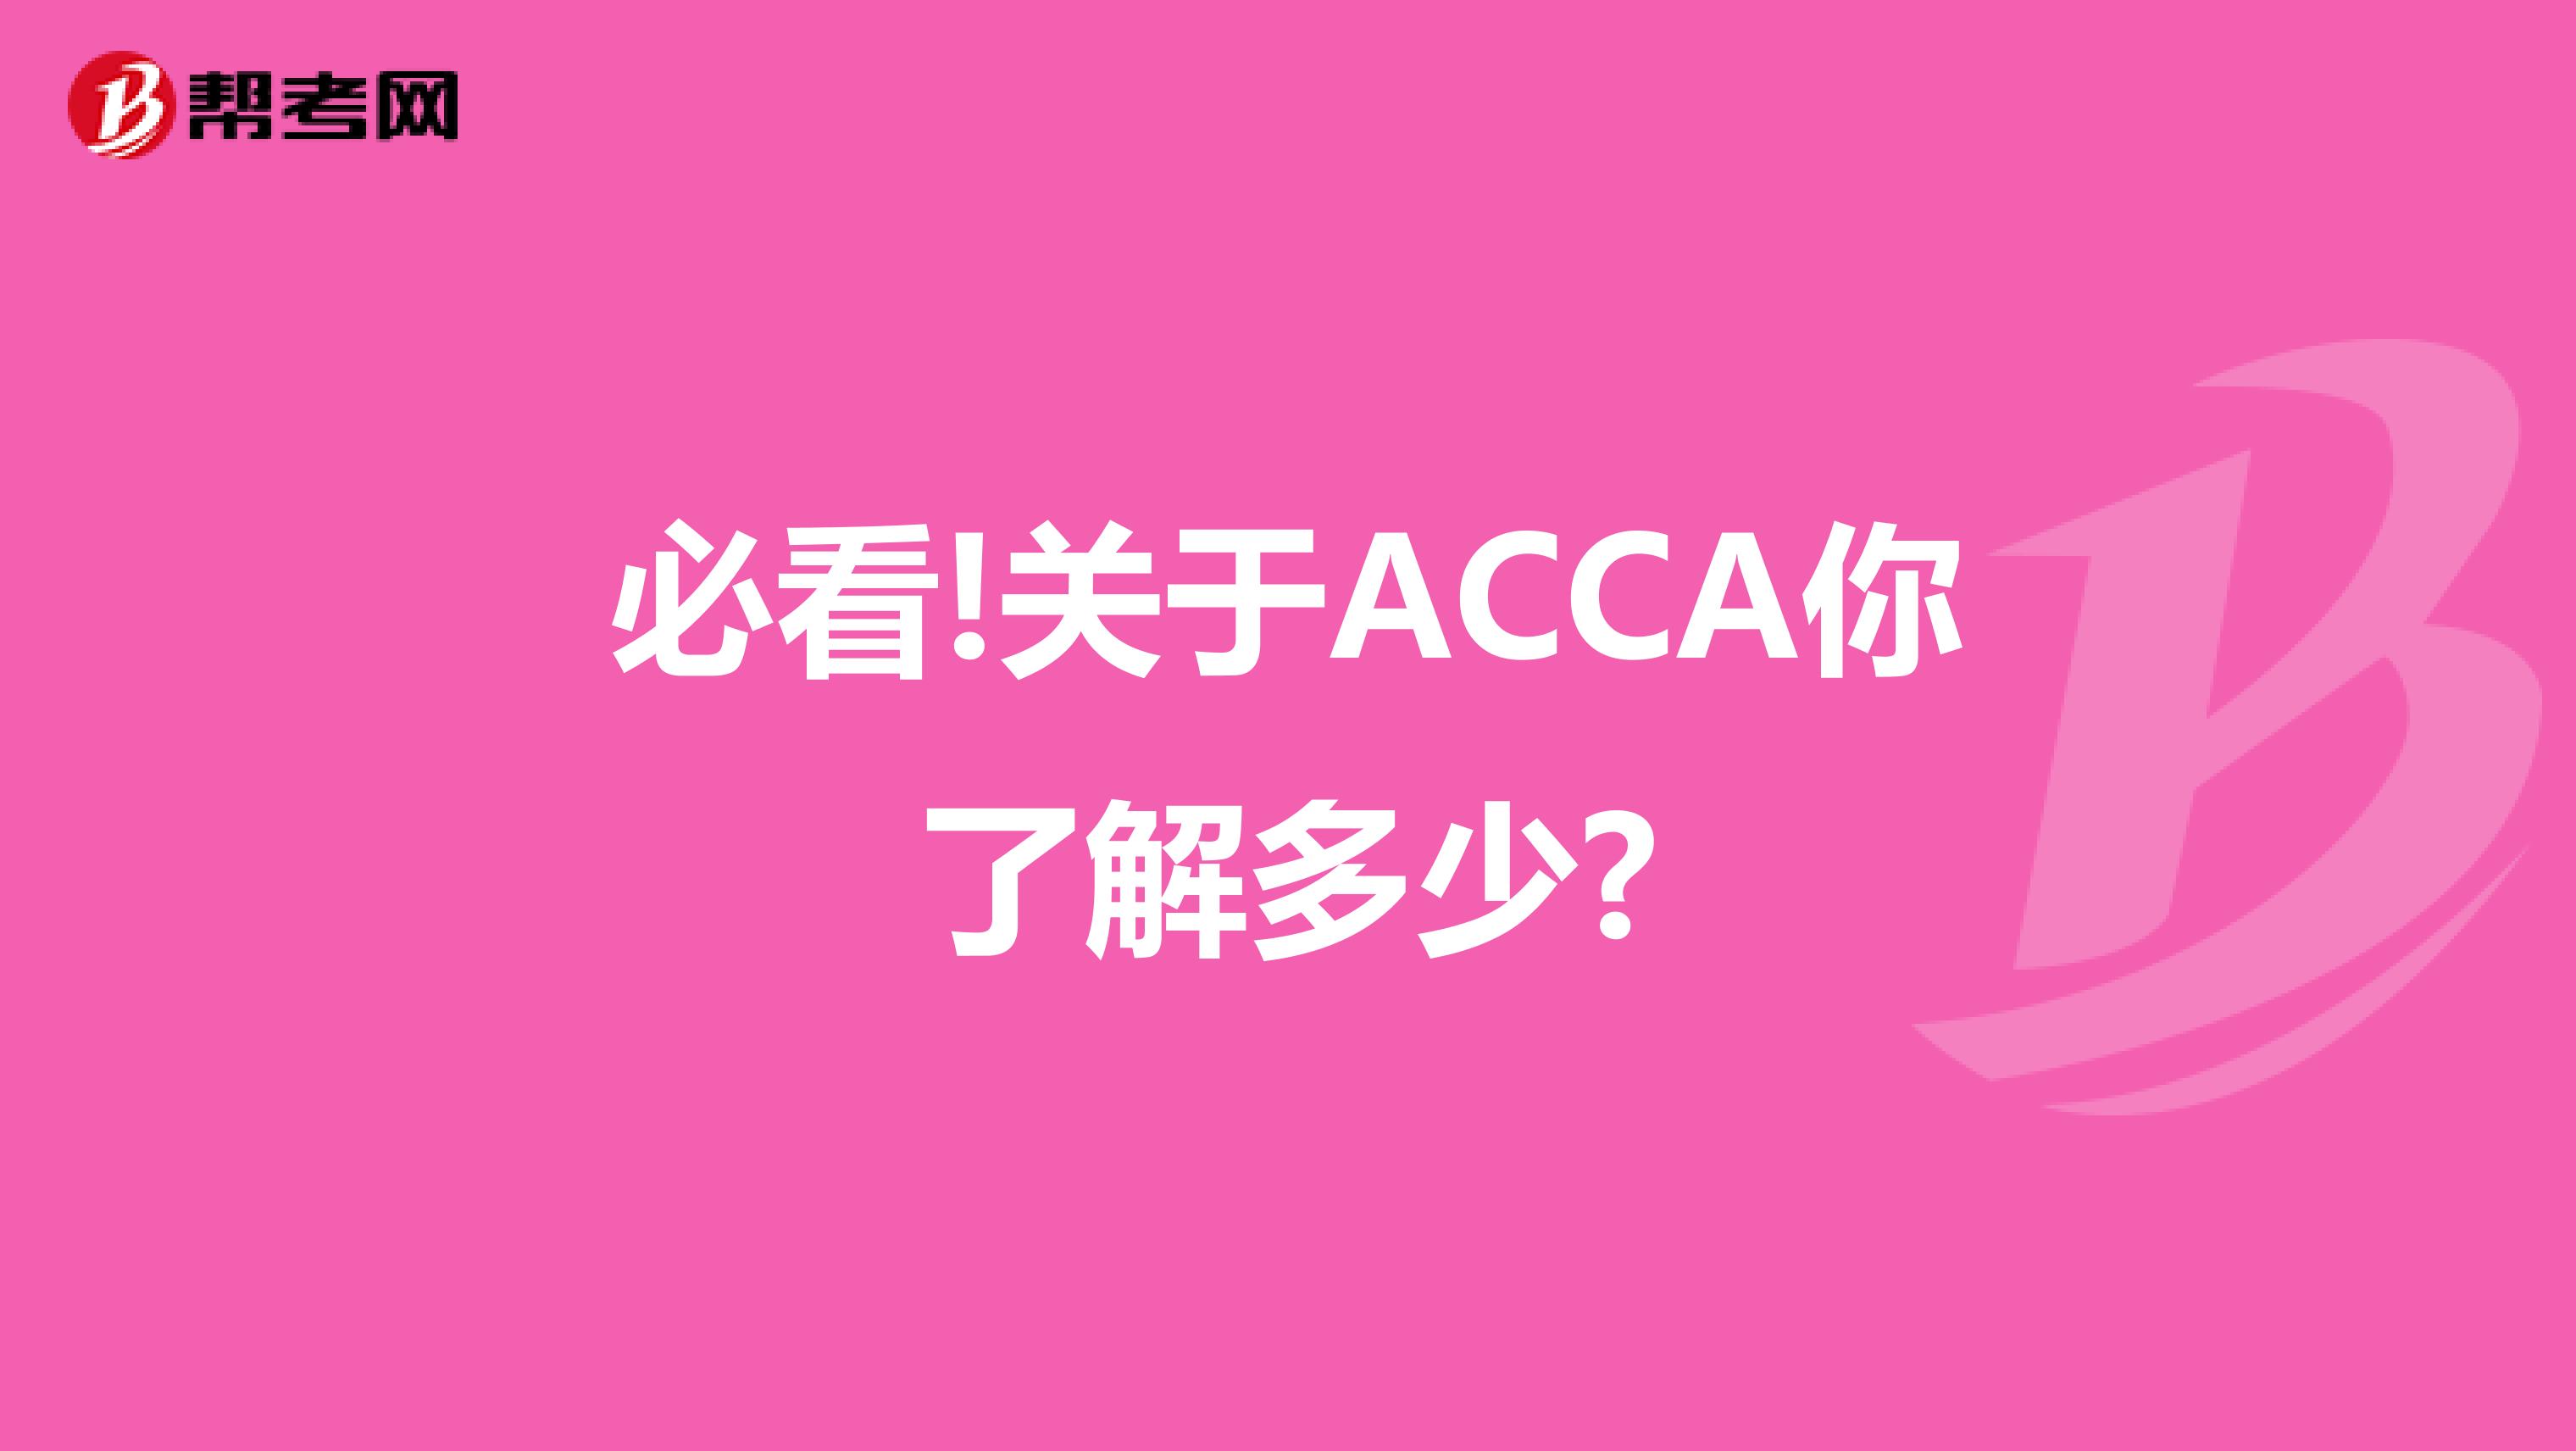 必看!关于ACCA你了解多少?